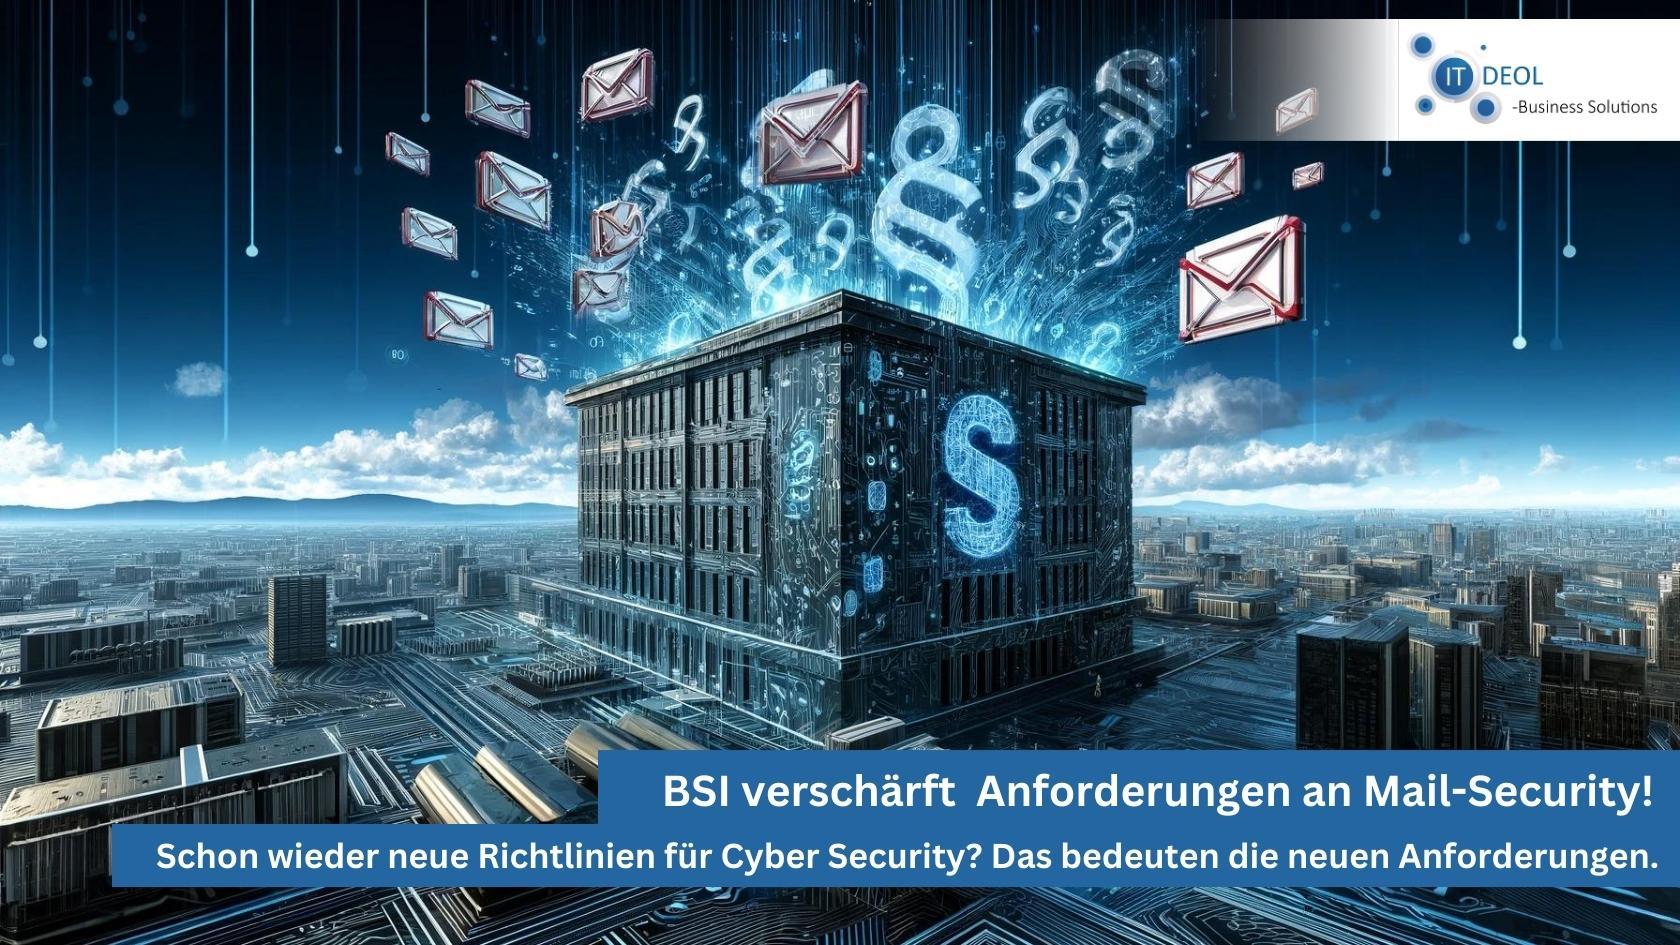 Mail-Security – Härtere Anforderungen des BSI